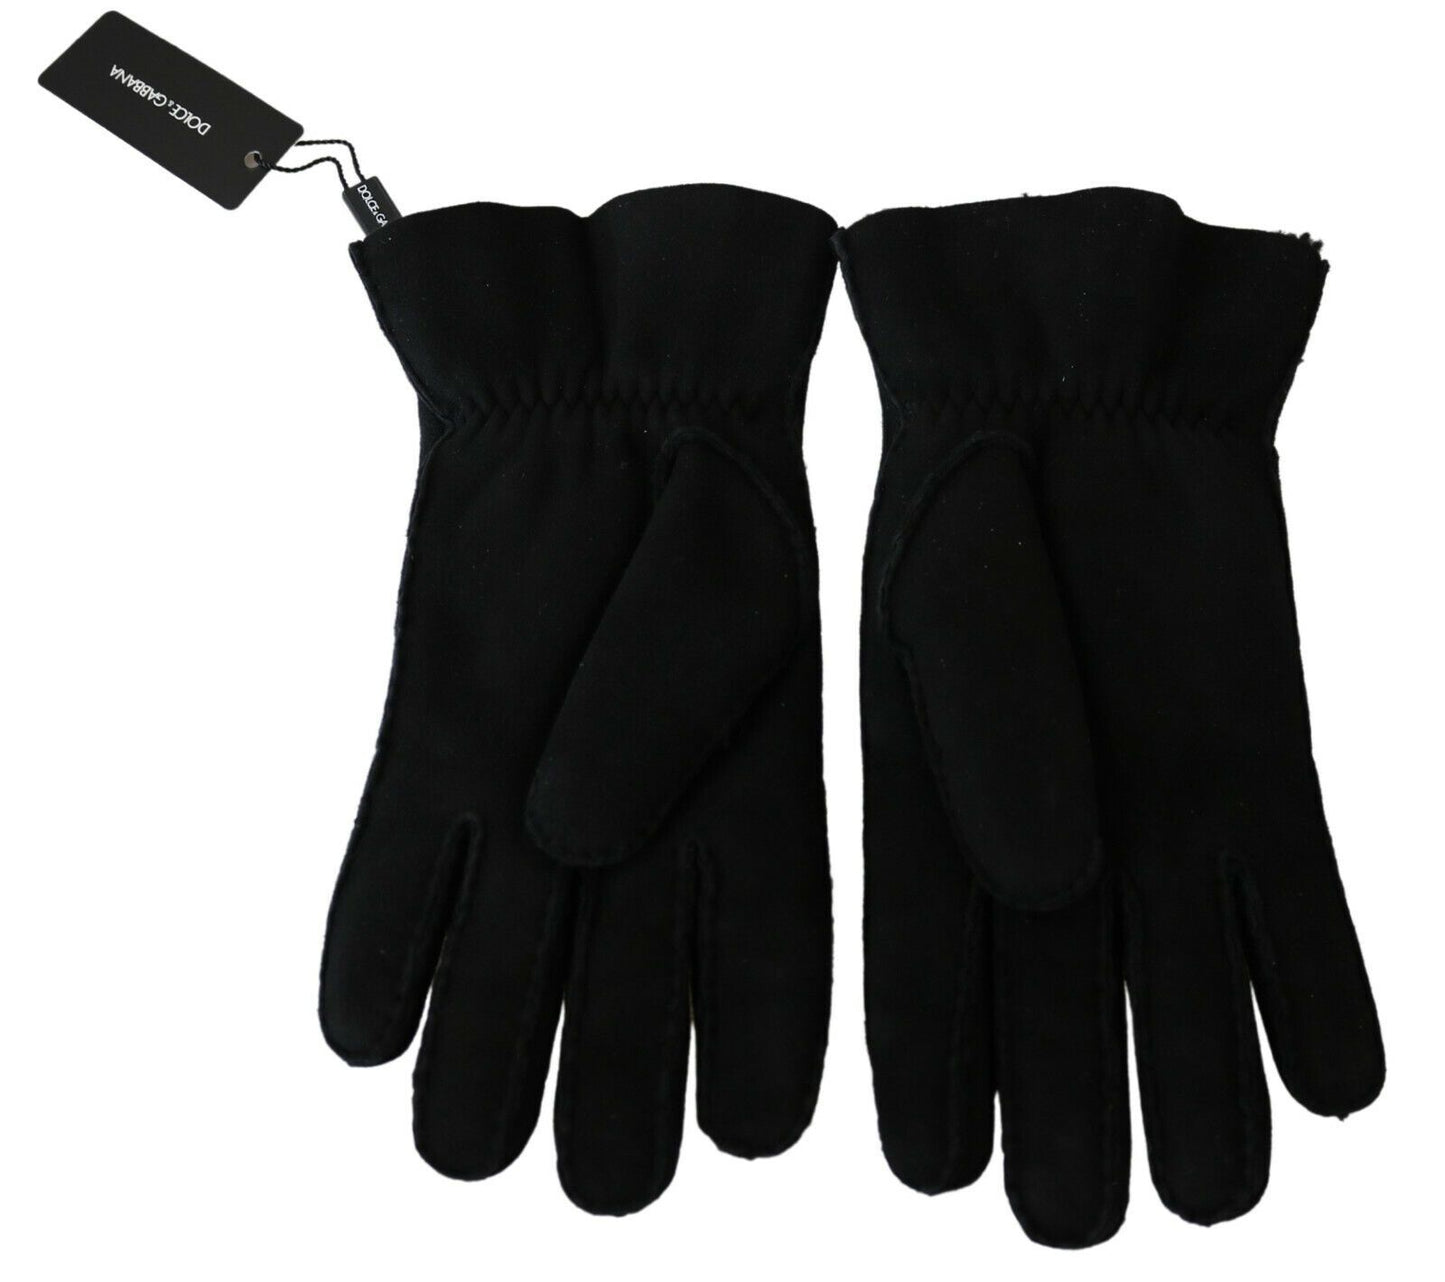 Dolce & Gabbana Black Leather Motorcycle Biker Mitten Gloves